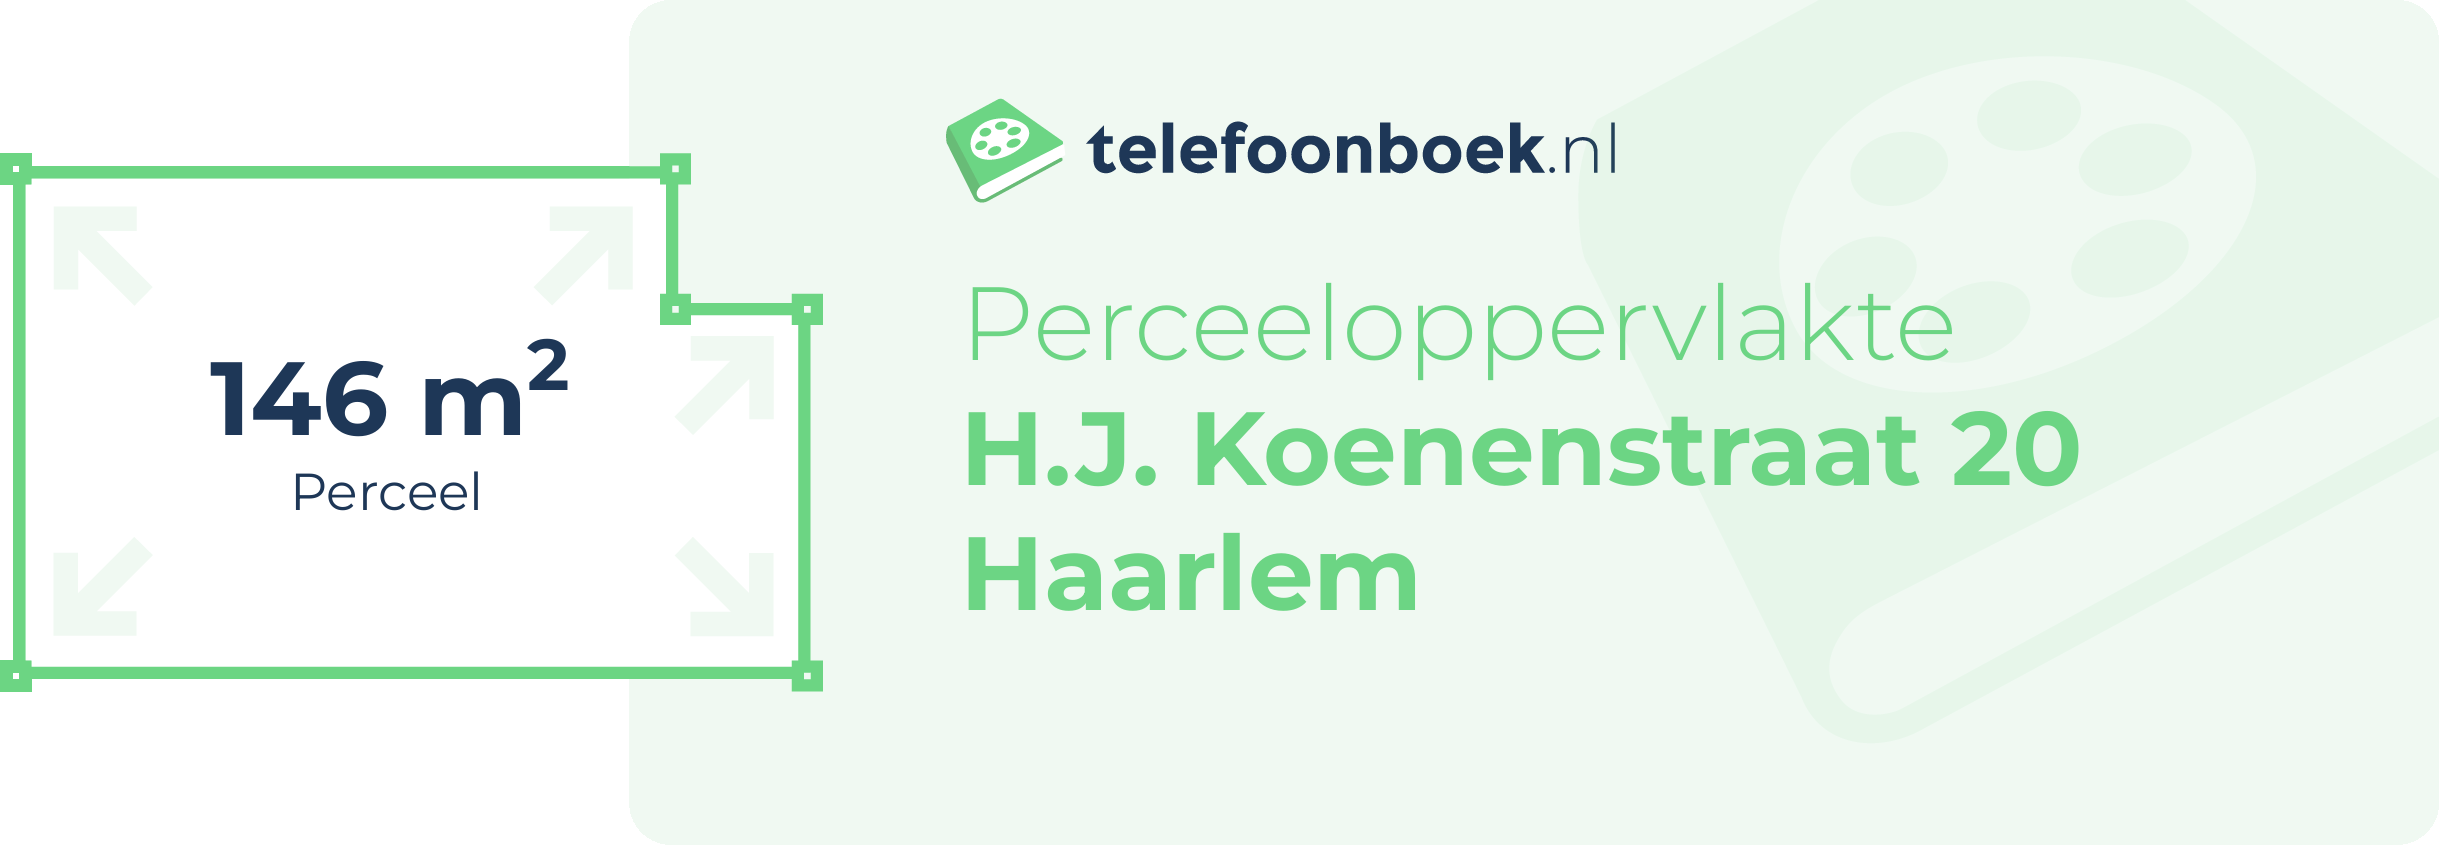 Perceeloppervlakte H.J. Koenenstraat 20 Haarlem